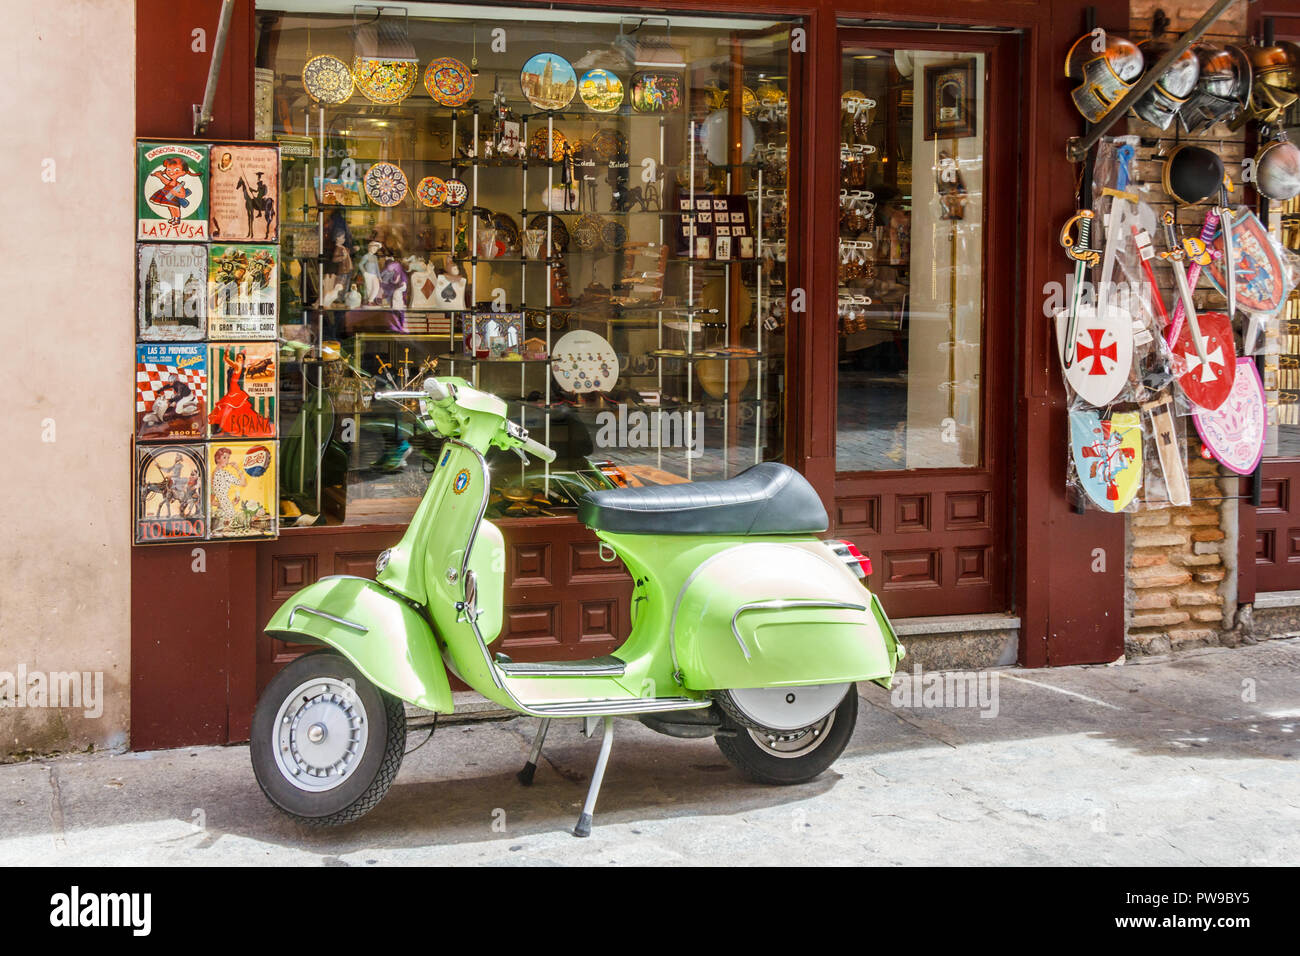 Toledo, Espagne - 6 juin 2018 : : Lime Green scooter garé à l'extérieur de magasin de souvenirs. La trottinette est idéale pour circuler dans les rues étroites. Banque D'Images